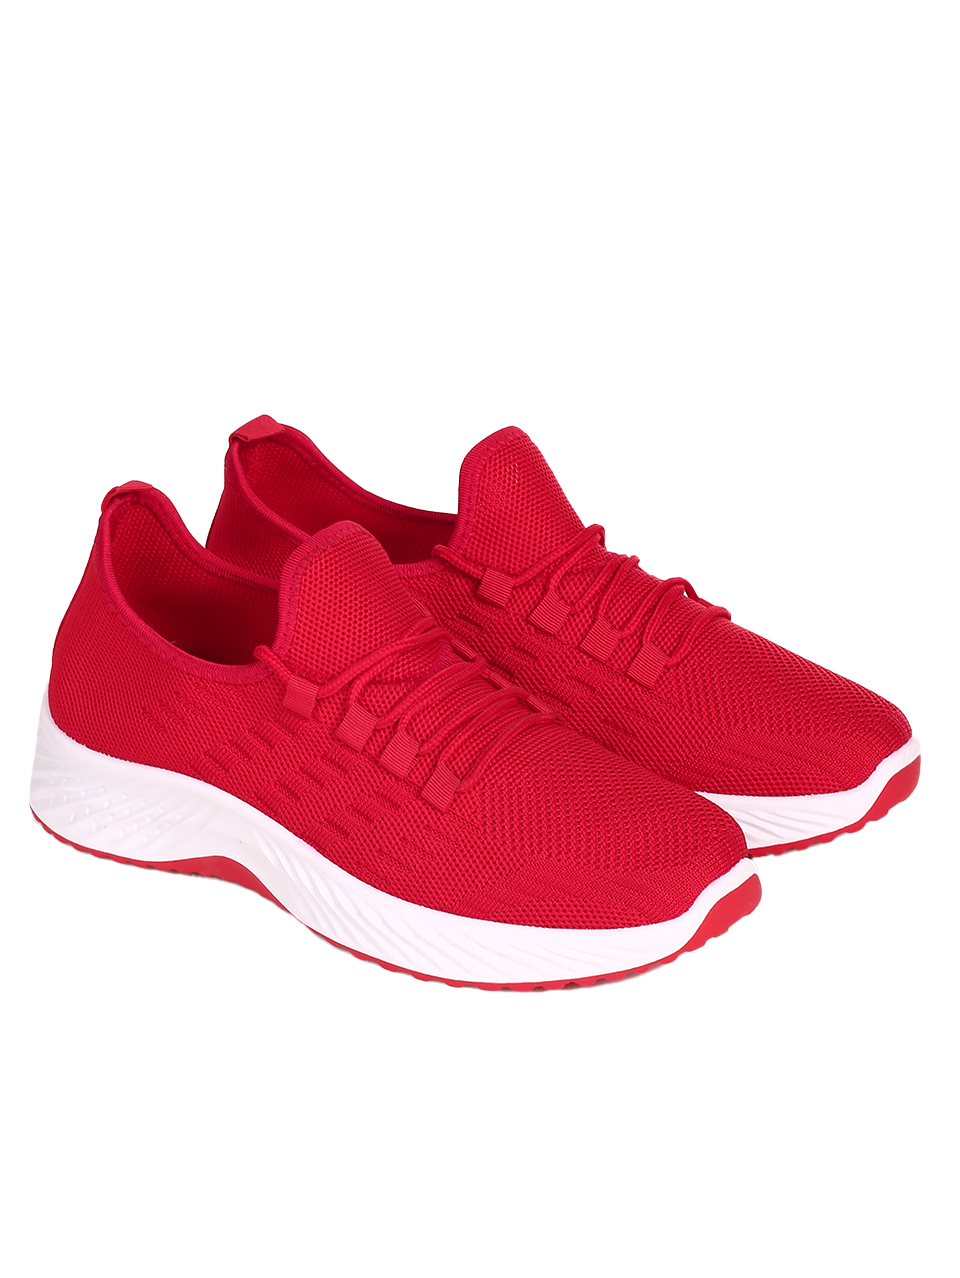 Ежедневни мъжки комфортни обувки в червено 7U-23216 red